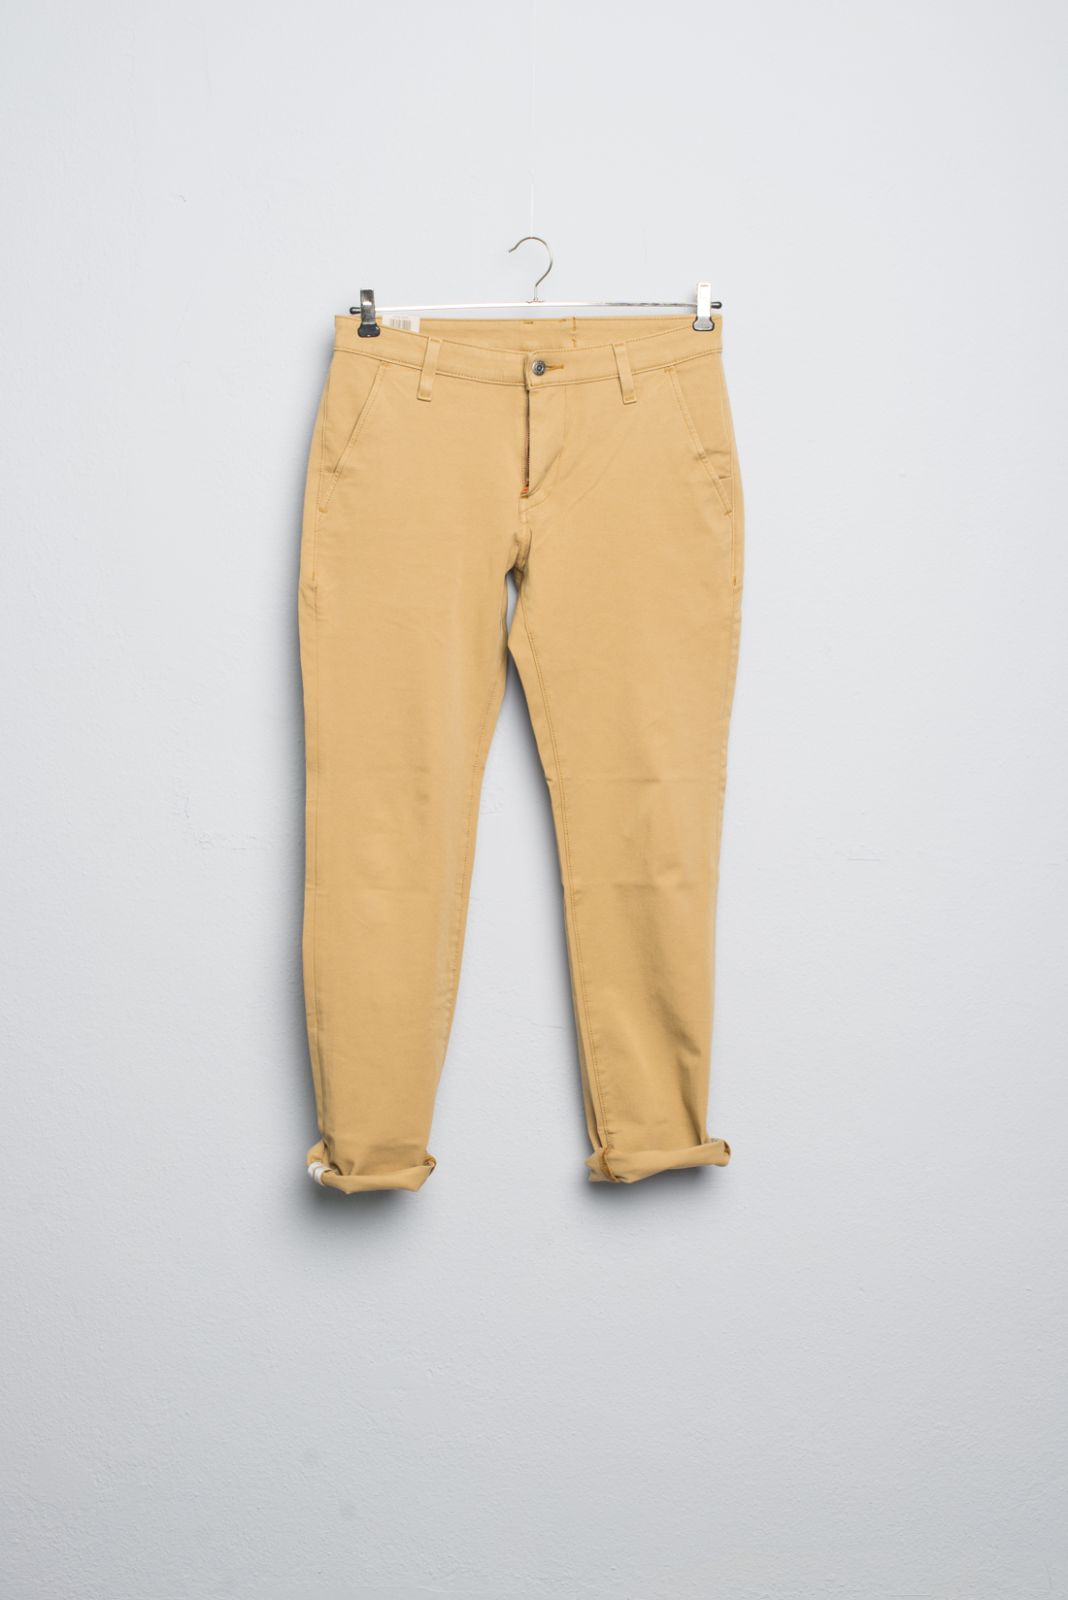 Buy Khaki Trousers  Pants for Men by LEVIS Online  Ajiocom